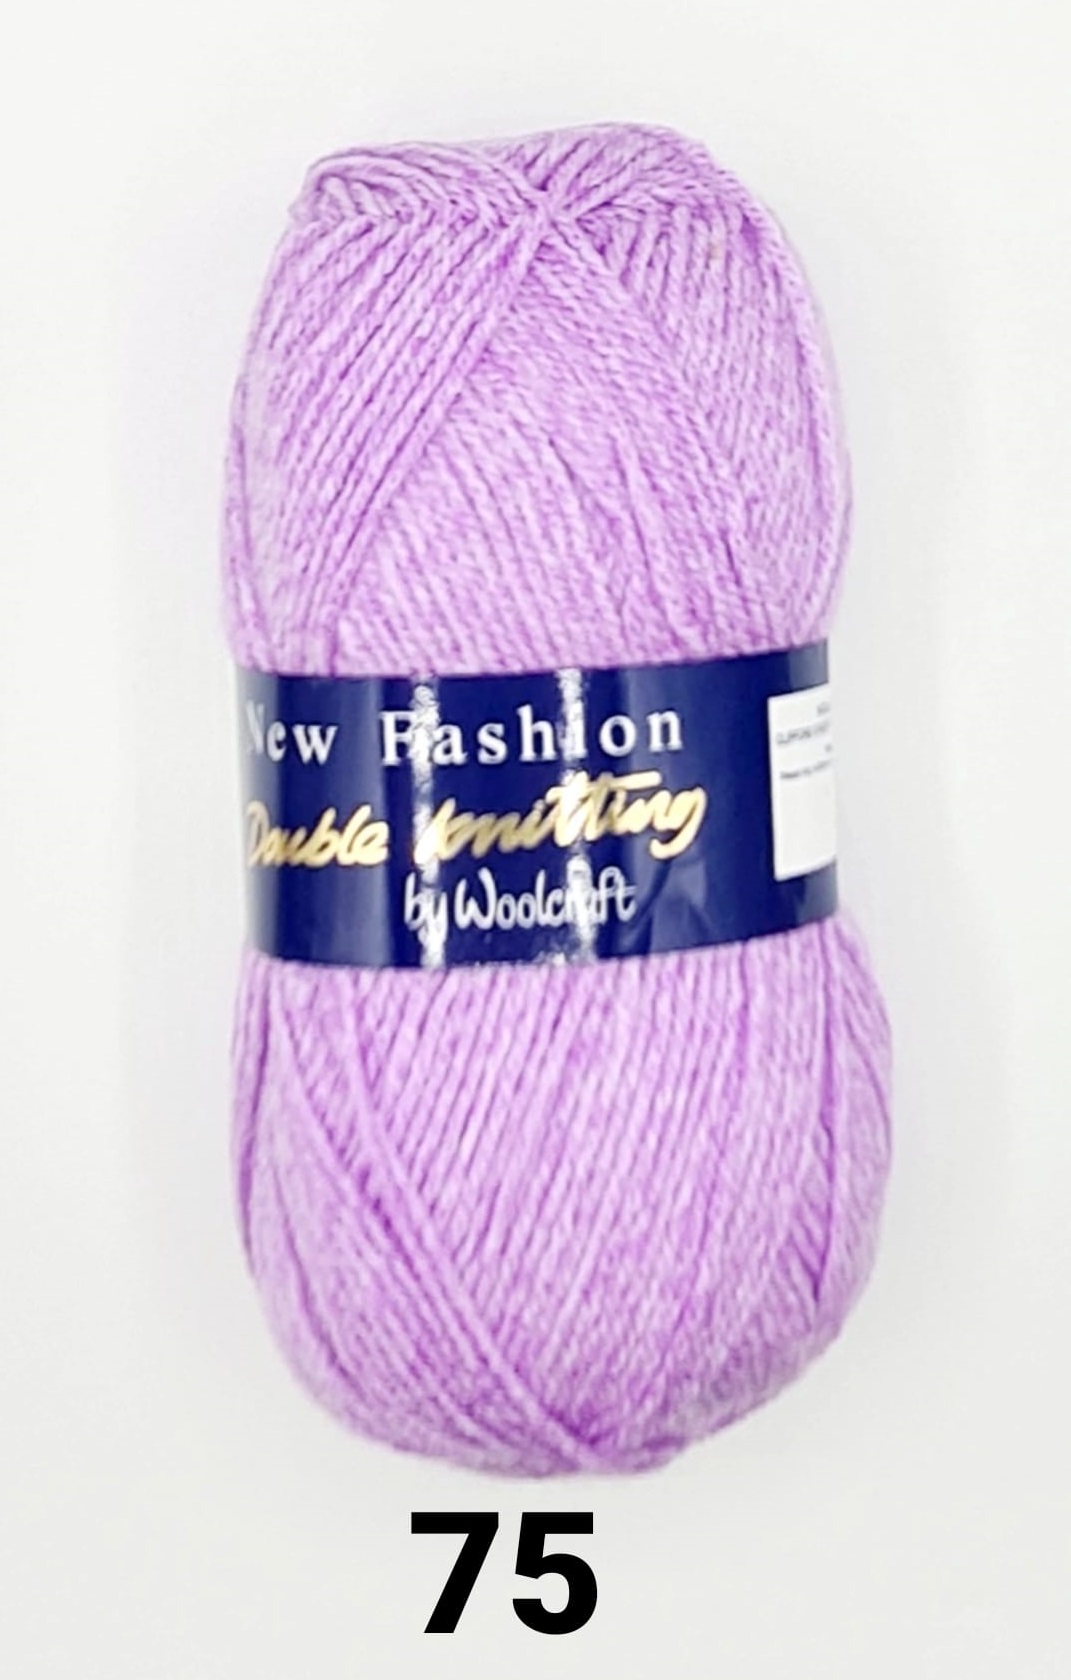 New Fashion DK Yarn 10 Pack Lilac Mist 075